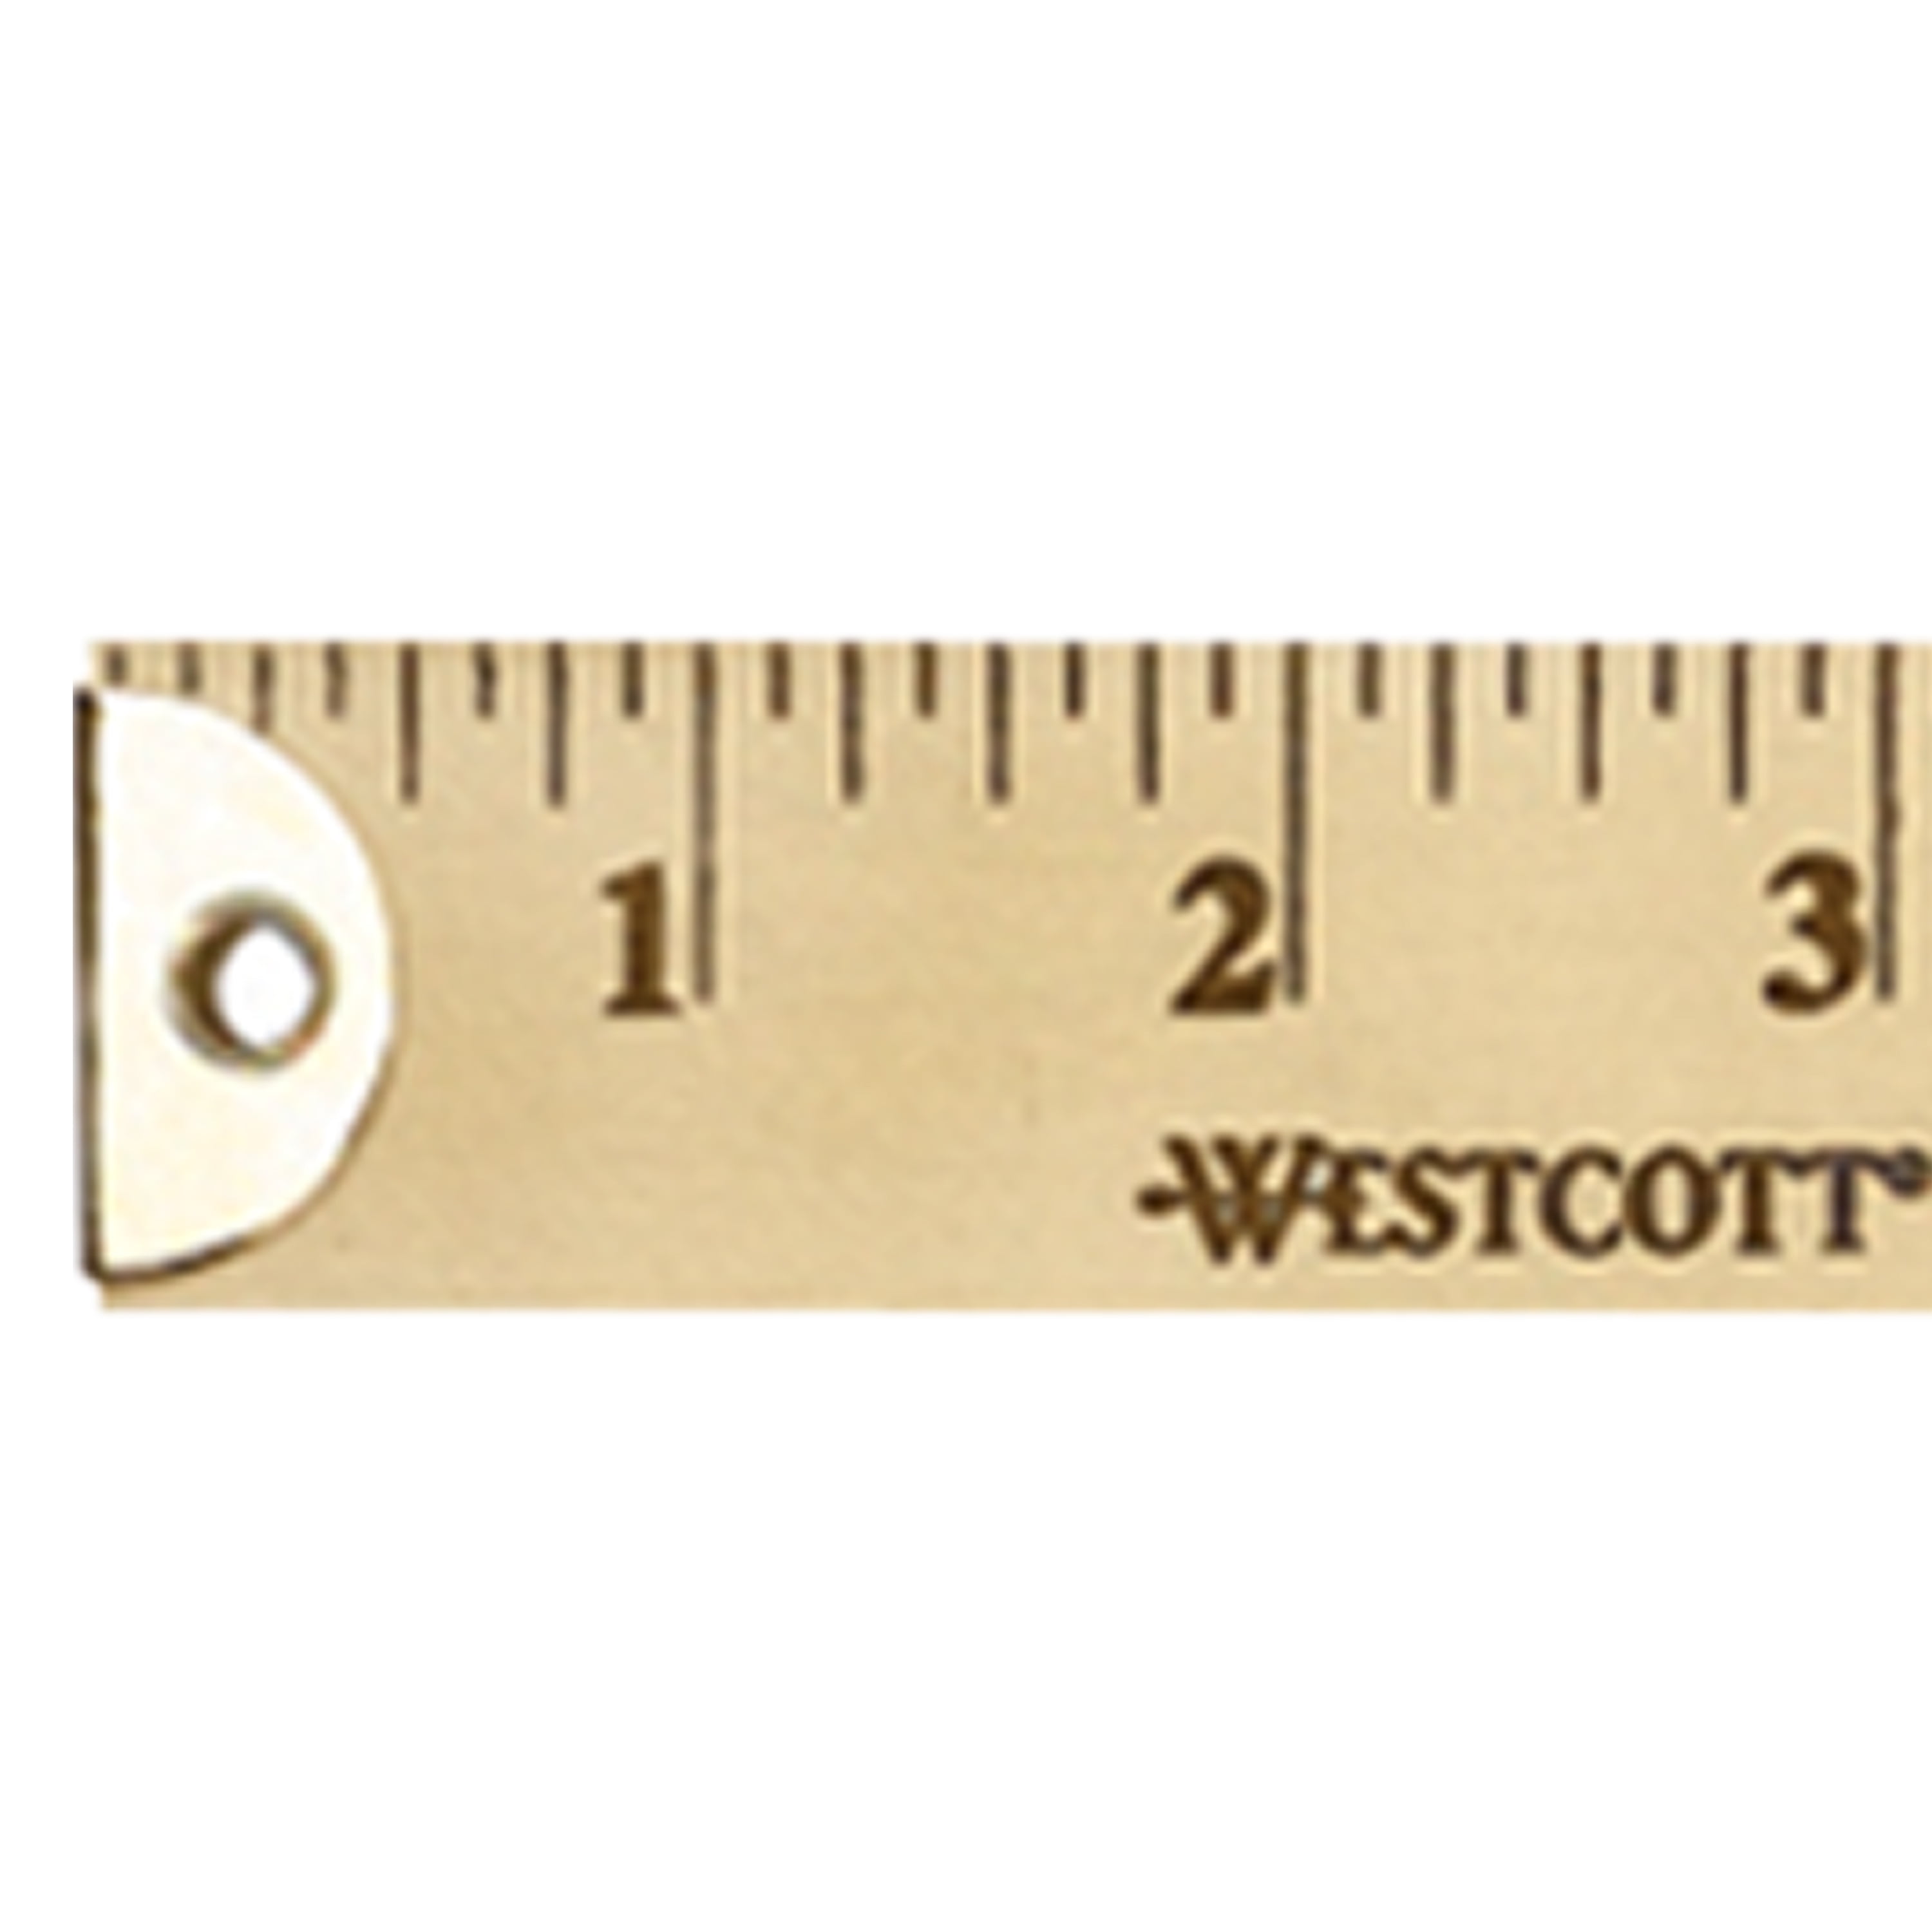 WESTCOTT 10420 Ruler,Wood,36 In.